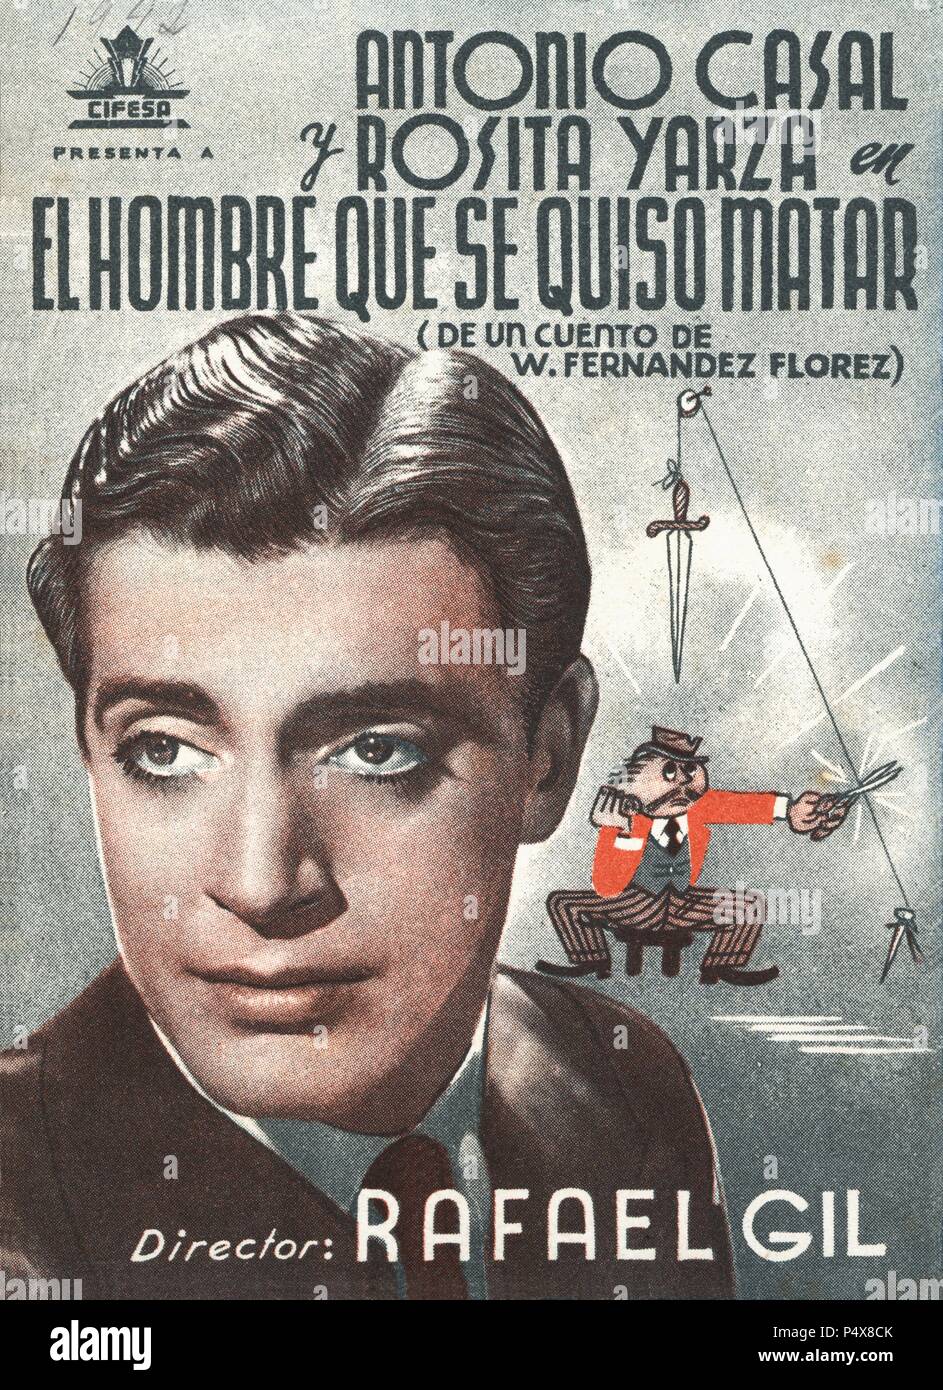 Cartel de la película El Hombre que se quiso matar, con Antonio Casal y Rosita Yarza, dirigida por Rafael Gil. España, 1942. Stock Photo